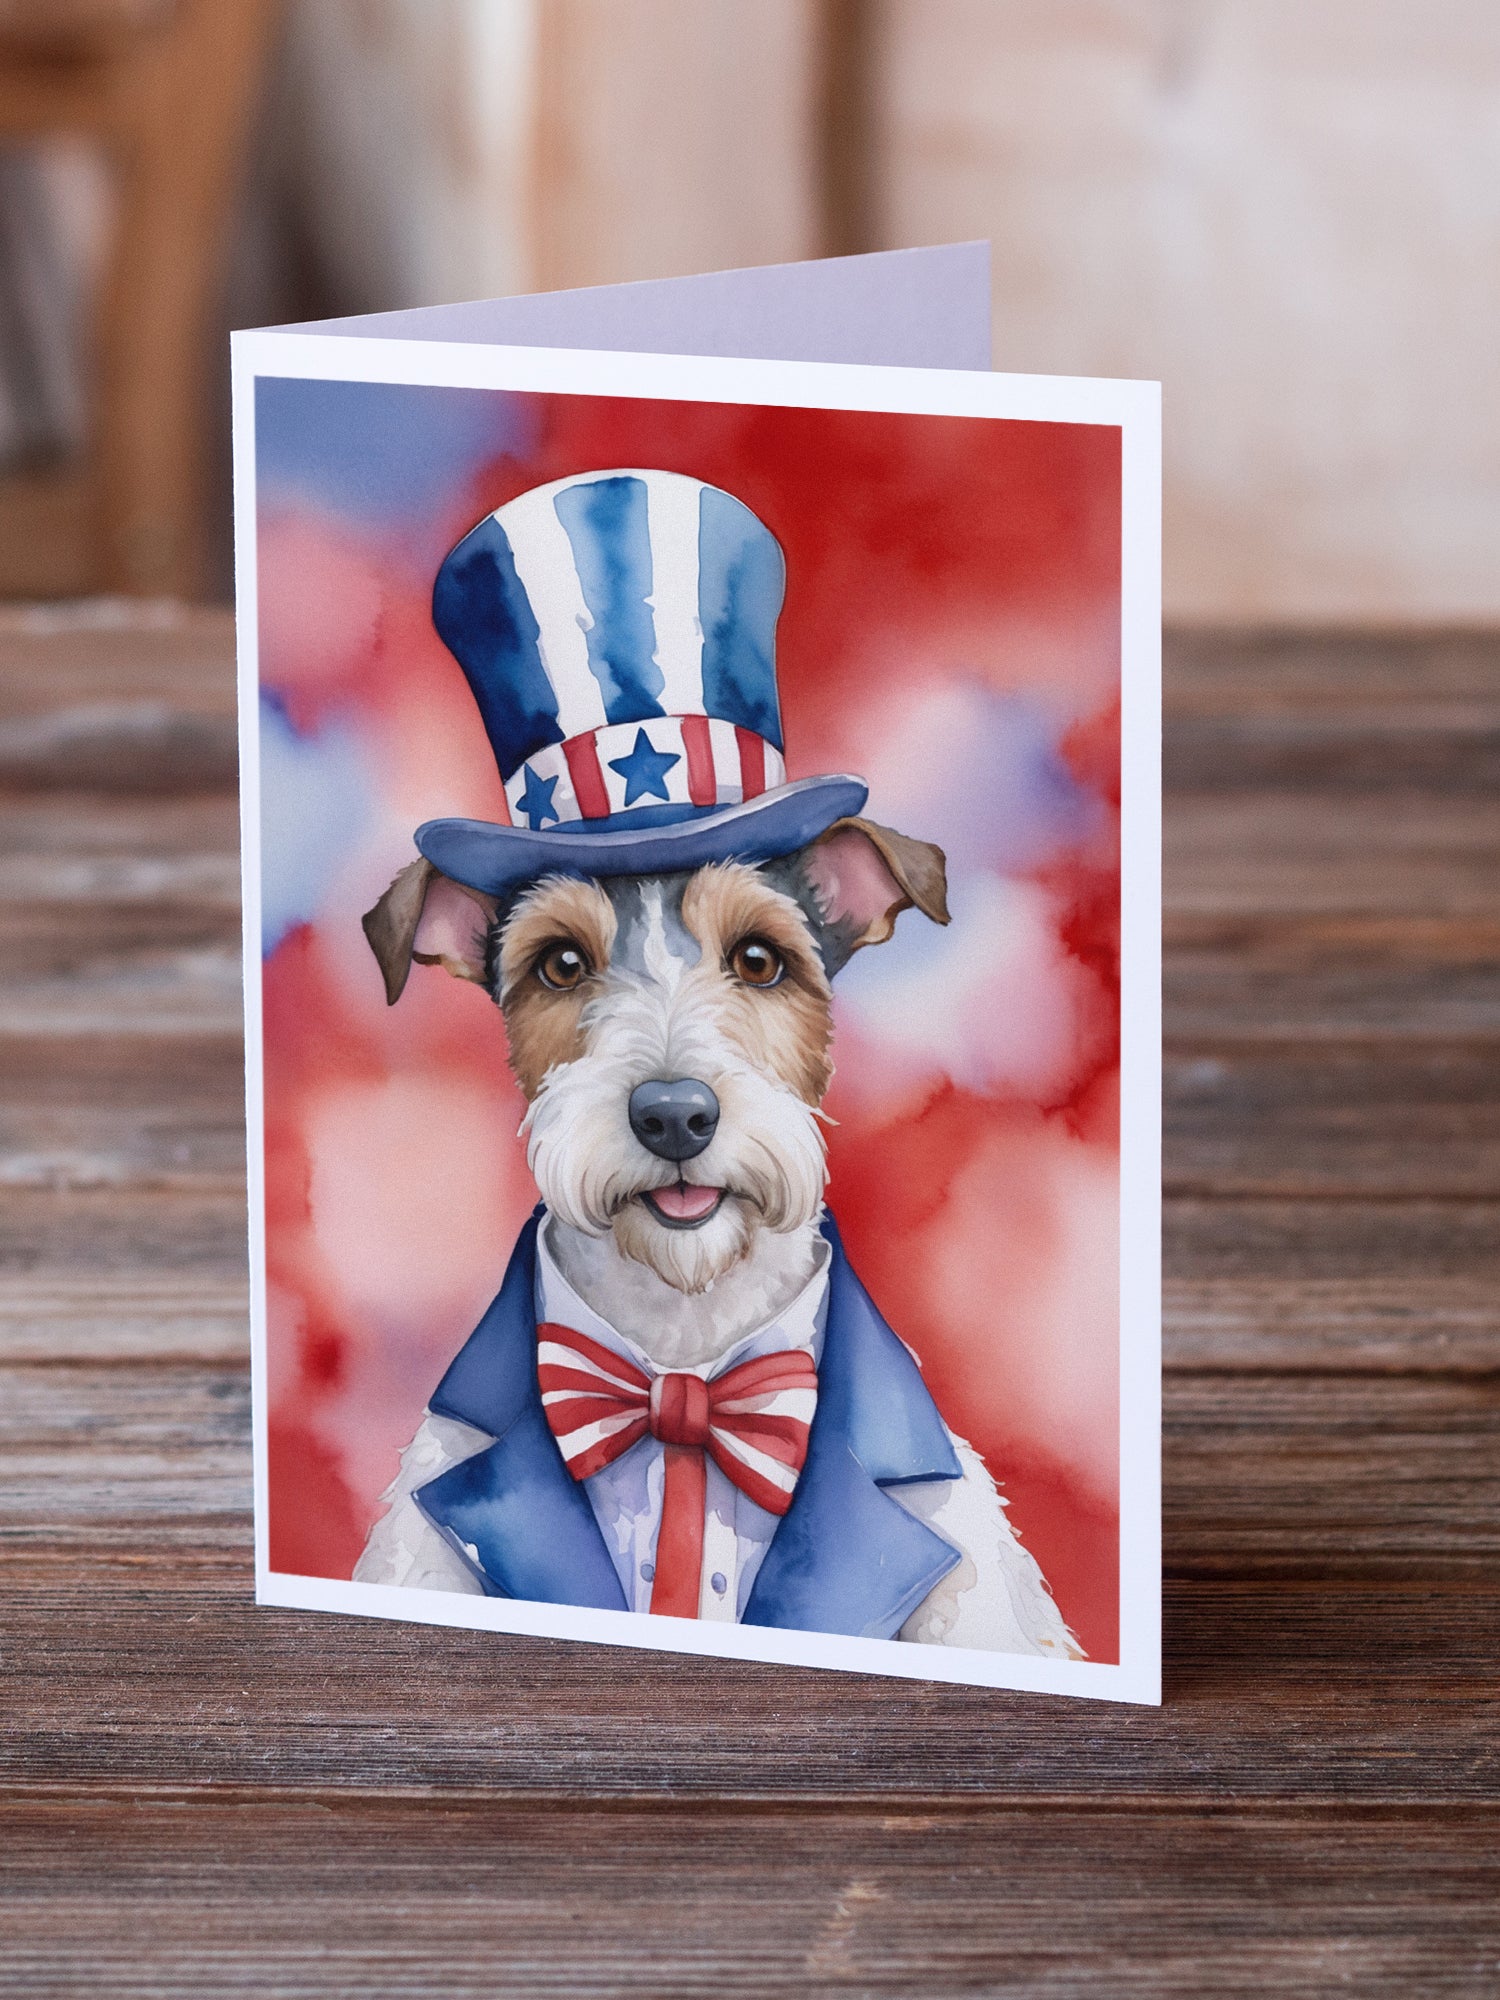 Buy this Fox Terrier Patriotic American Greeting Cards Pack of 8